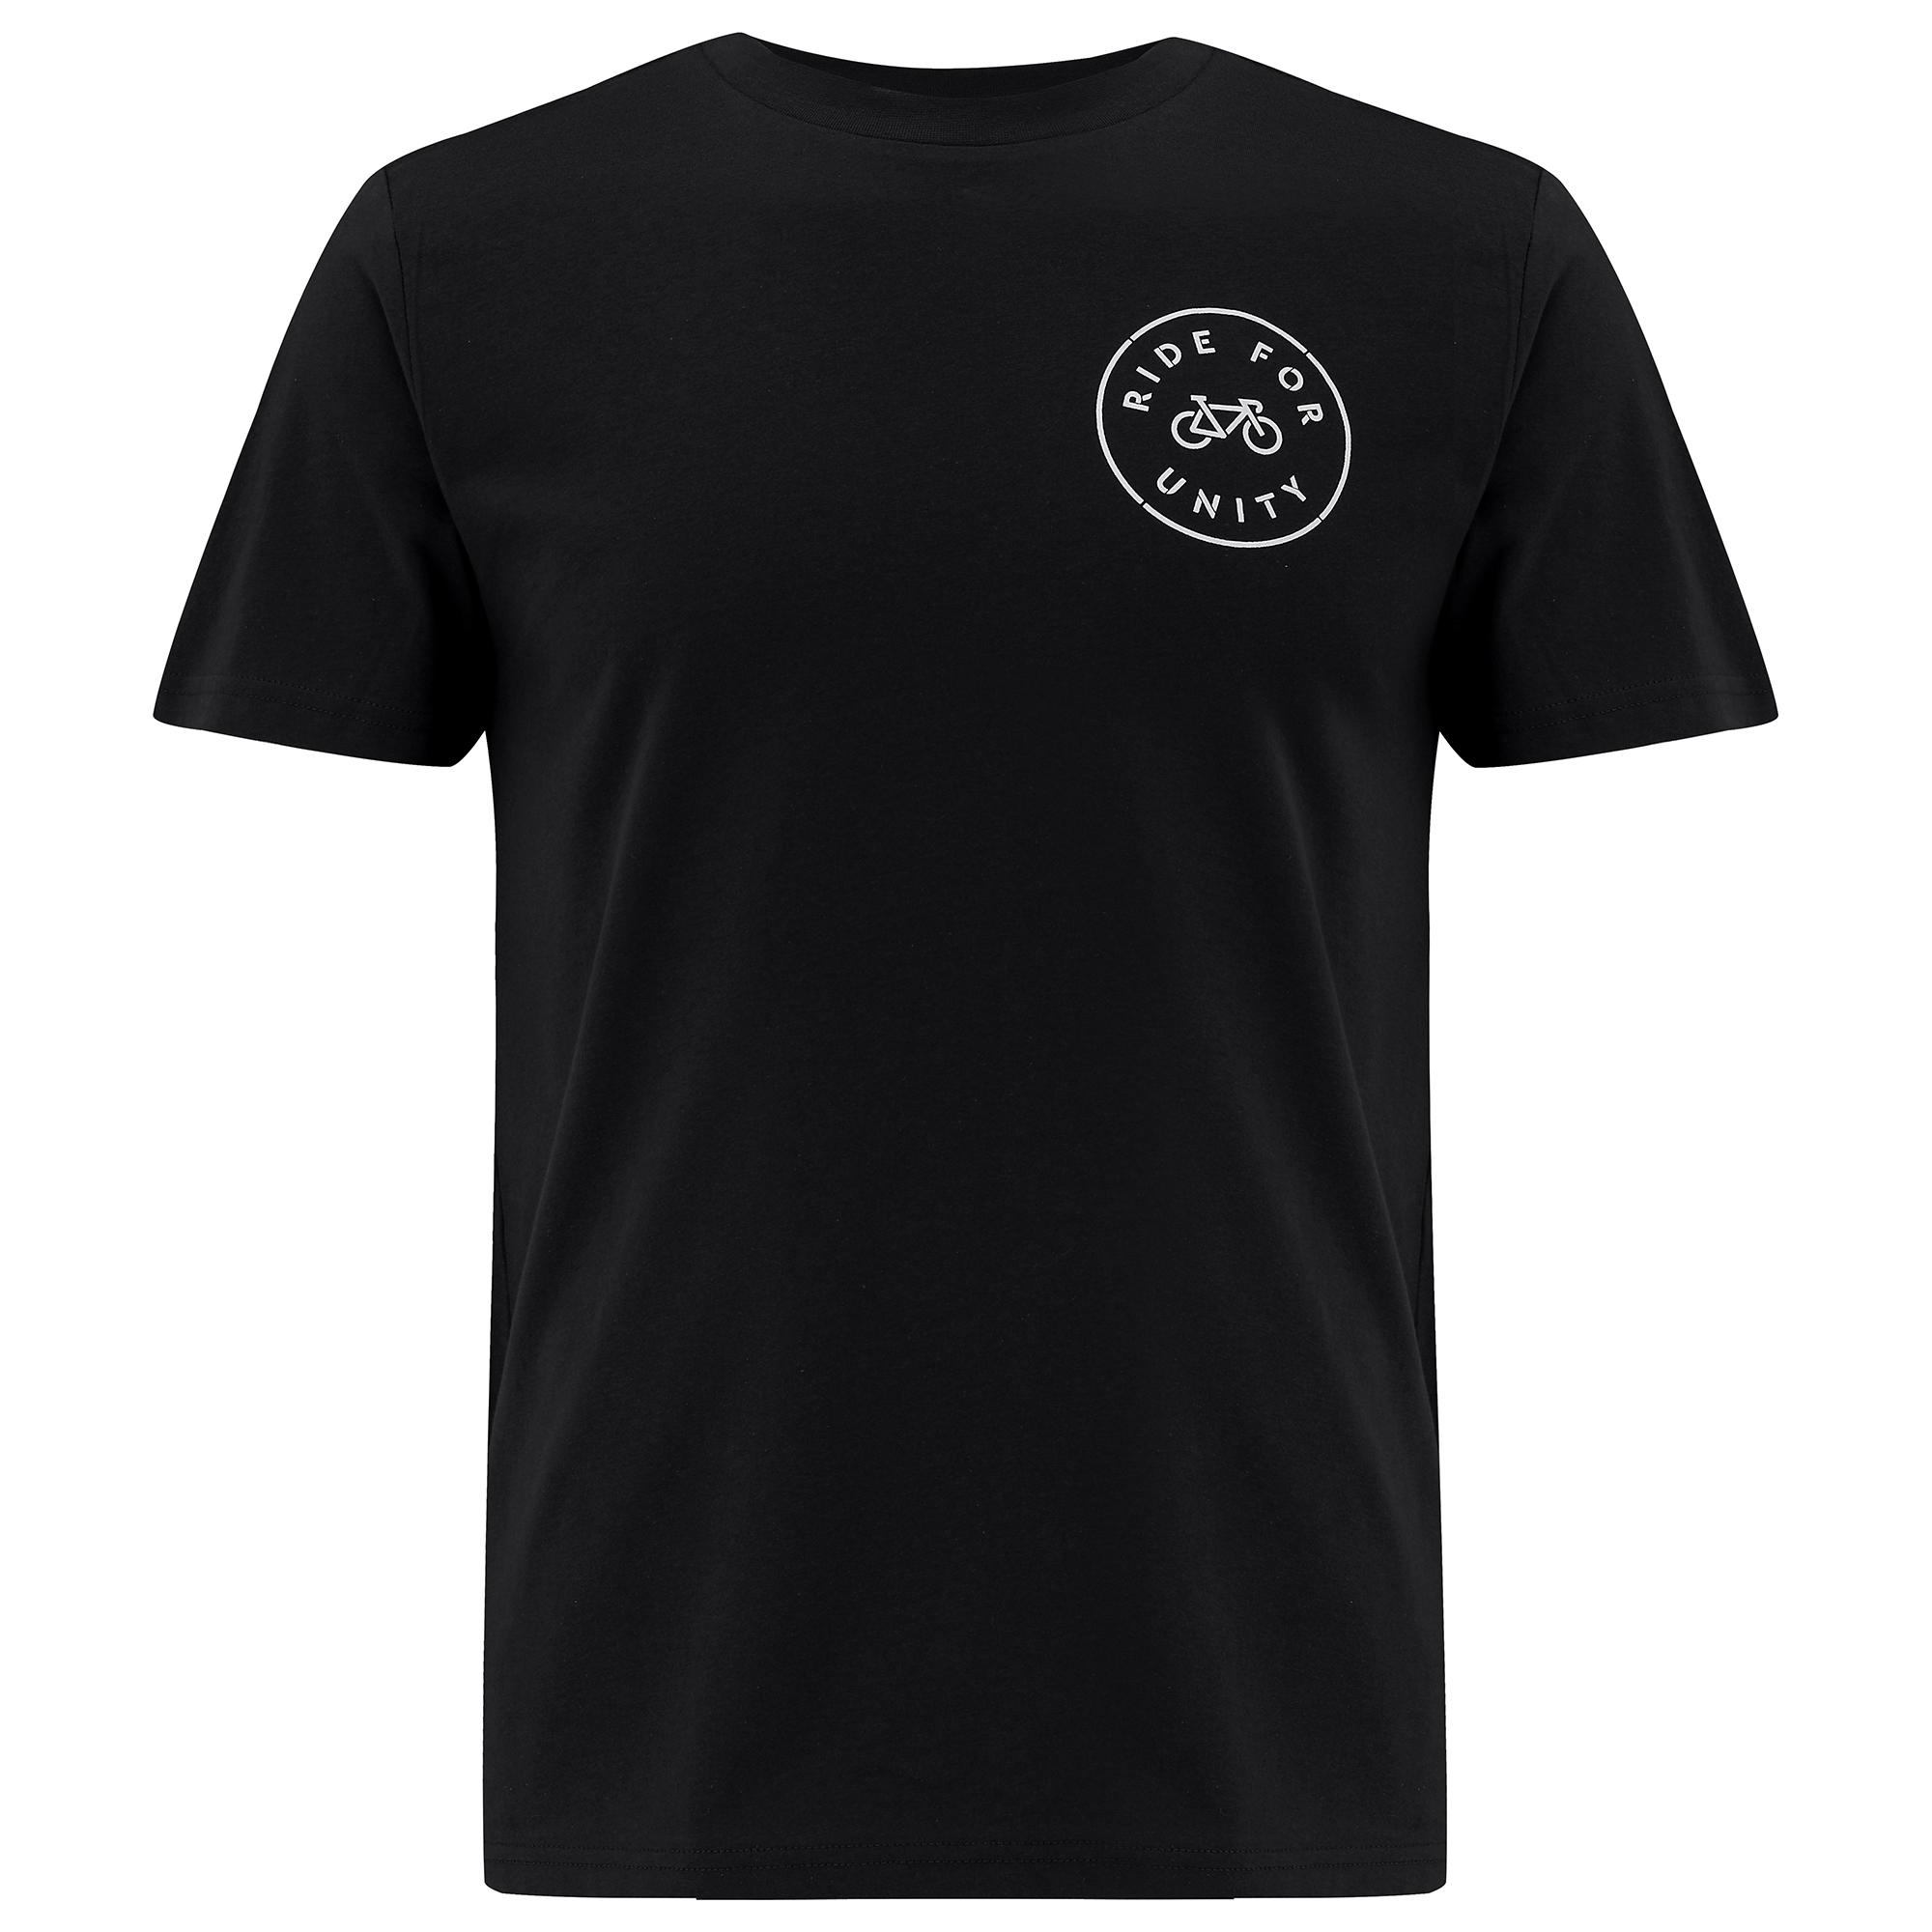 Dhb Ride For Unity T-shirt  Black